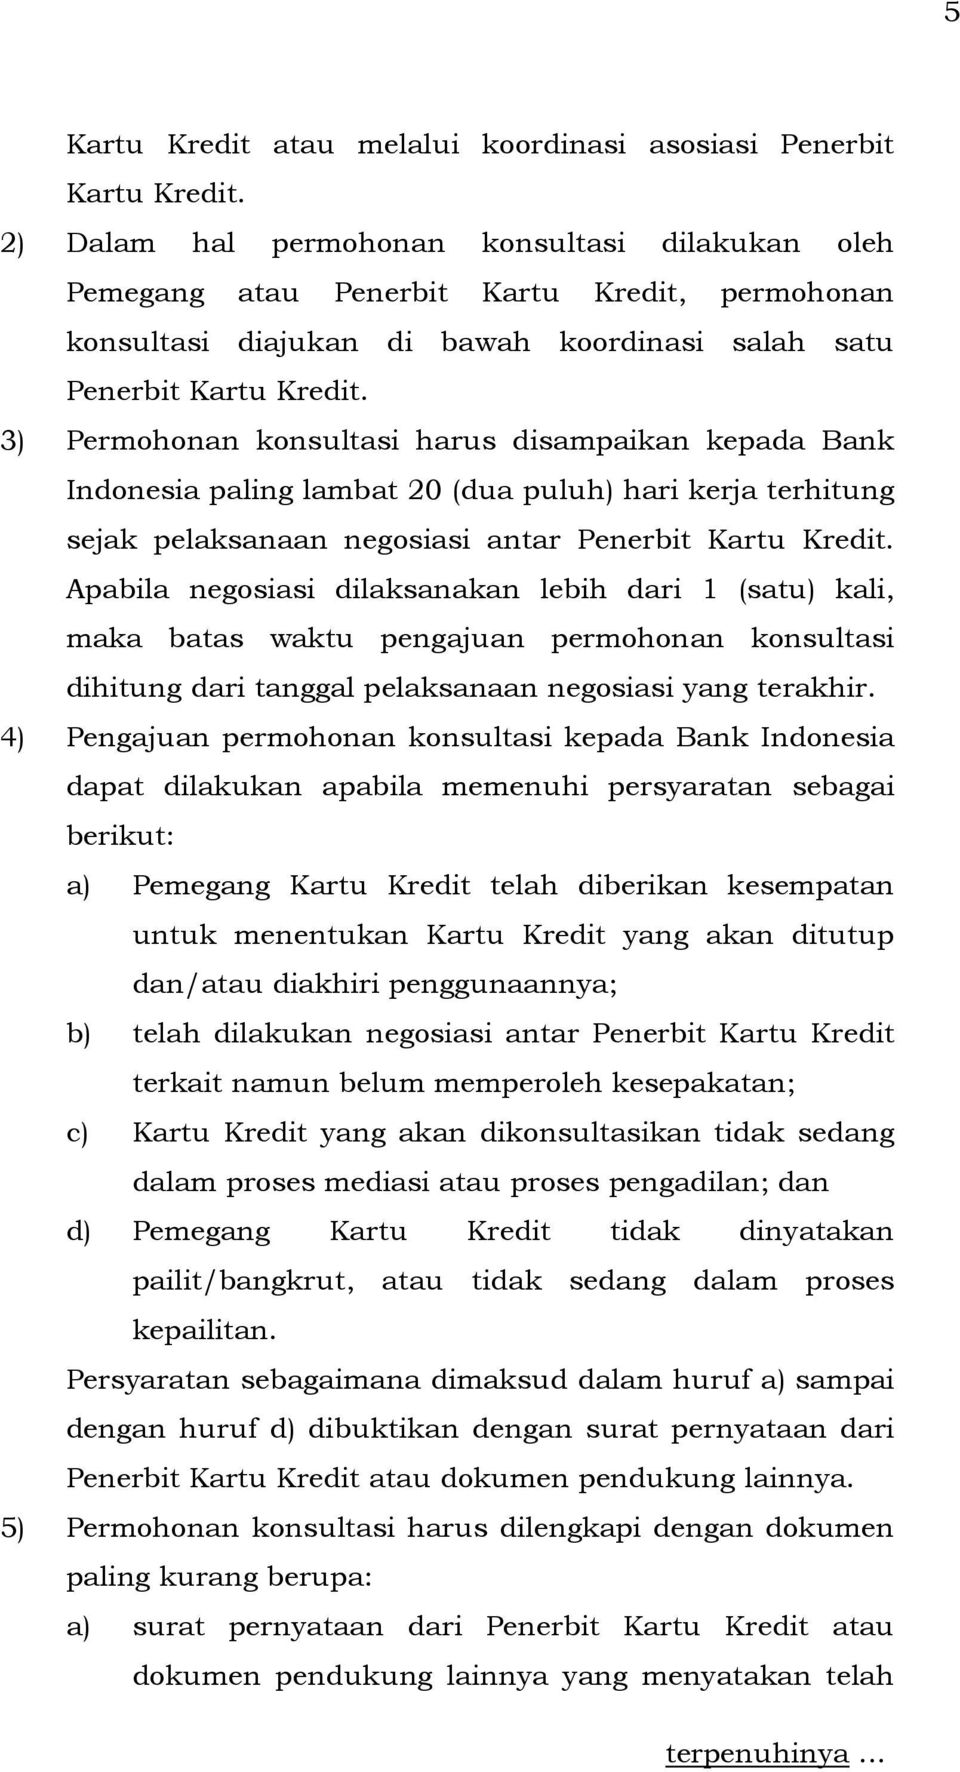 3) Permohonan konsultasi harus disampaikan kepada Bank Indonesia paling lambat 20 (dua puluh) hari kerja terhitung sejak pelaksanaan negosiasi antar Penerbit Kartu Kredit.